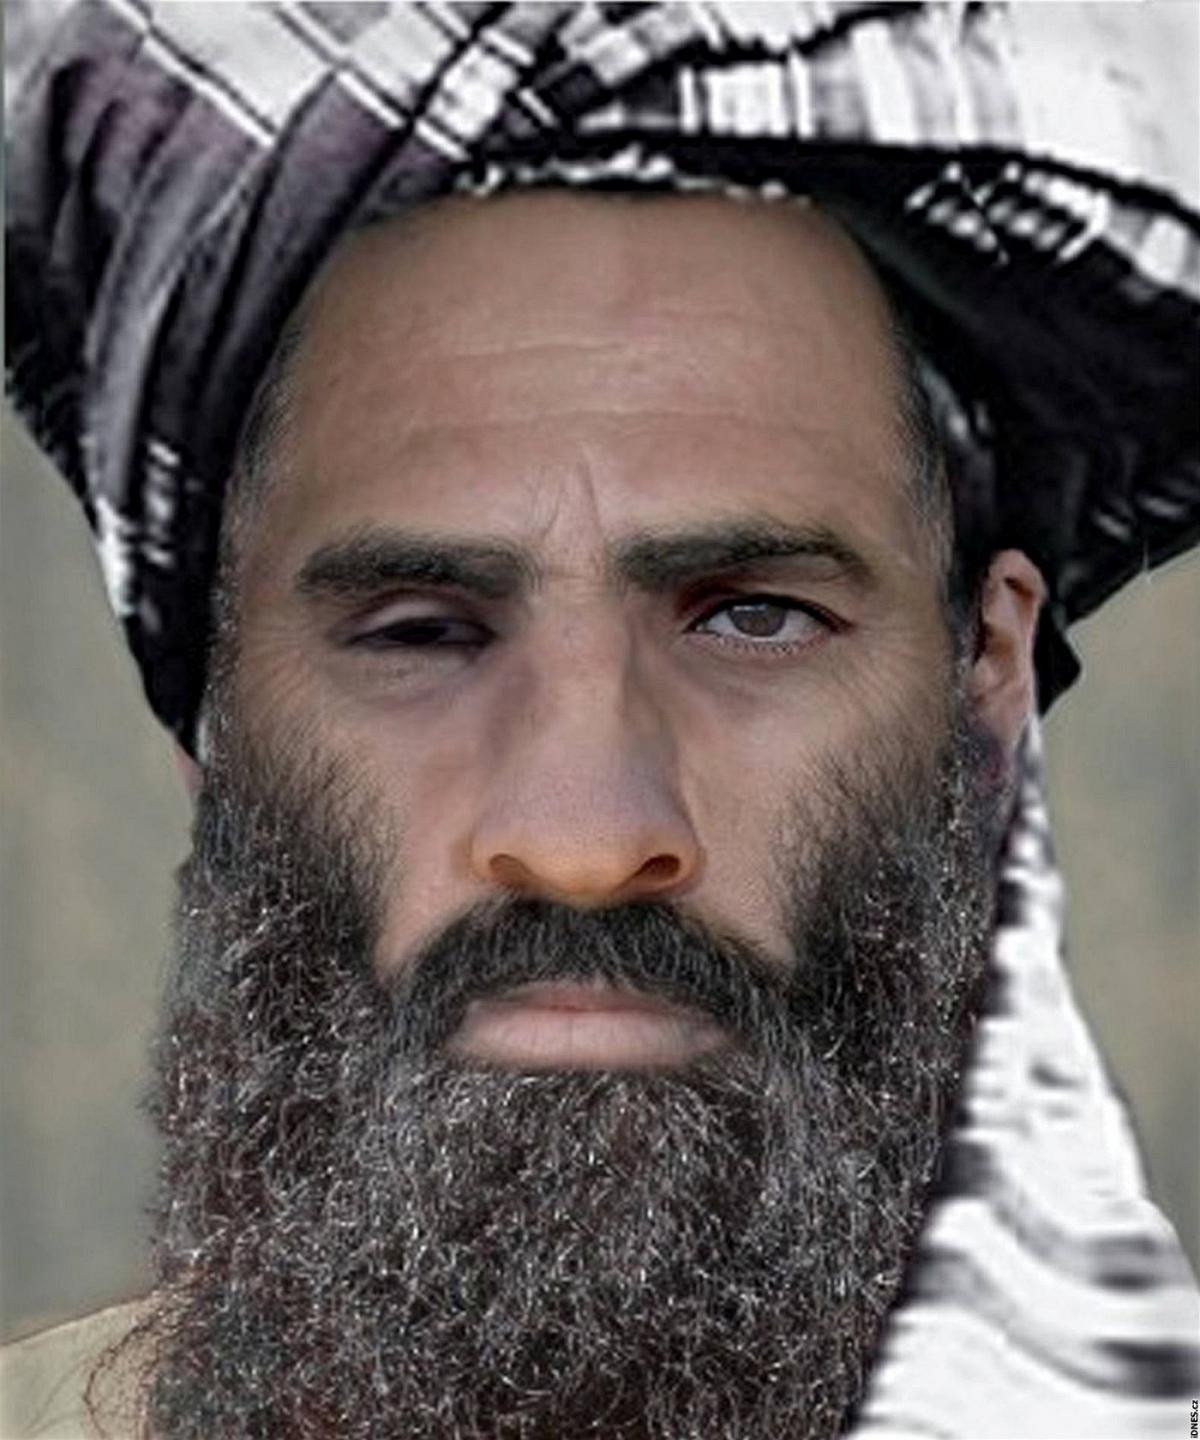 Composite image of Mullah Mohammed Omar